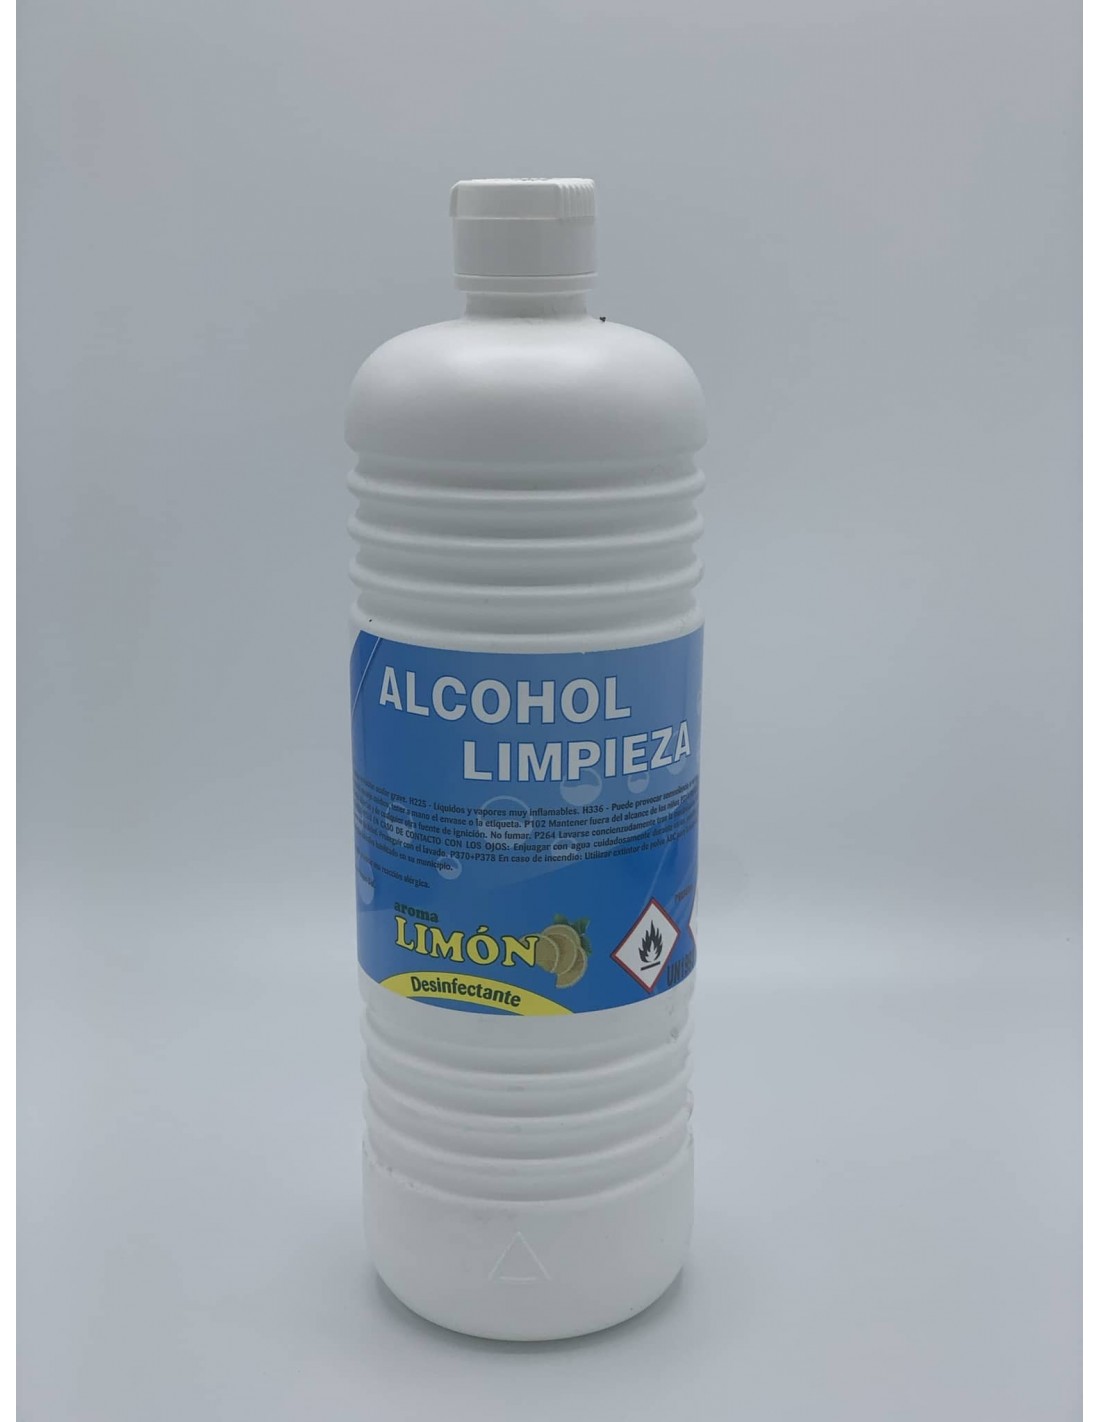 Alcohol 9010 (500 ml): limpieza, desinfección, disoluciones,  -  Ferreteria Miraflores